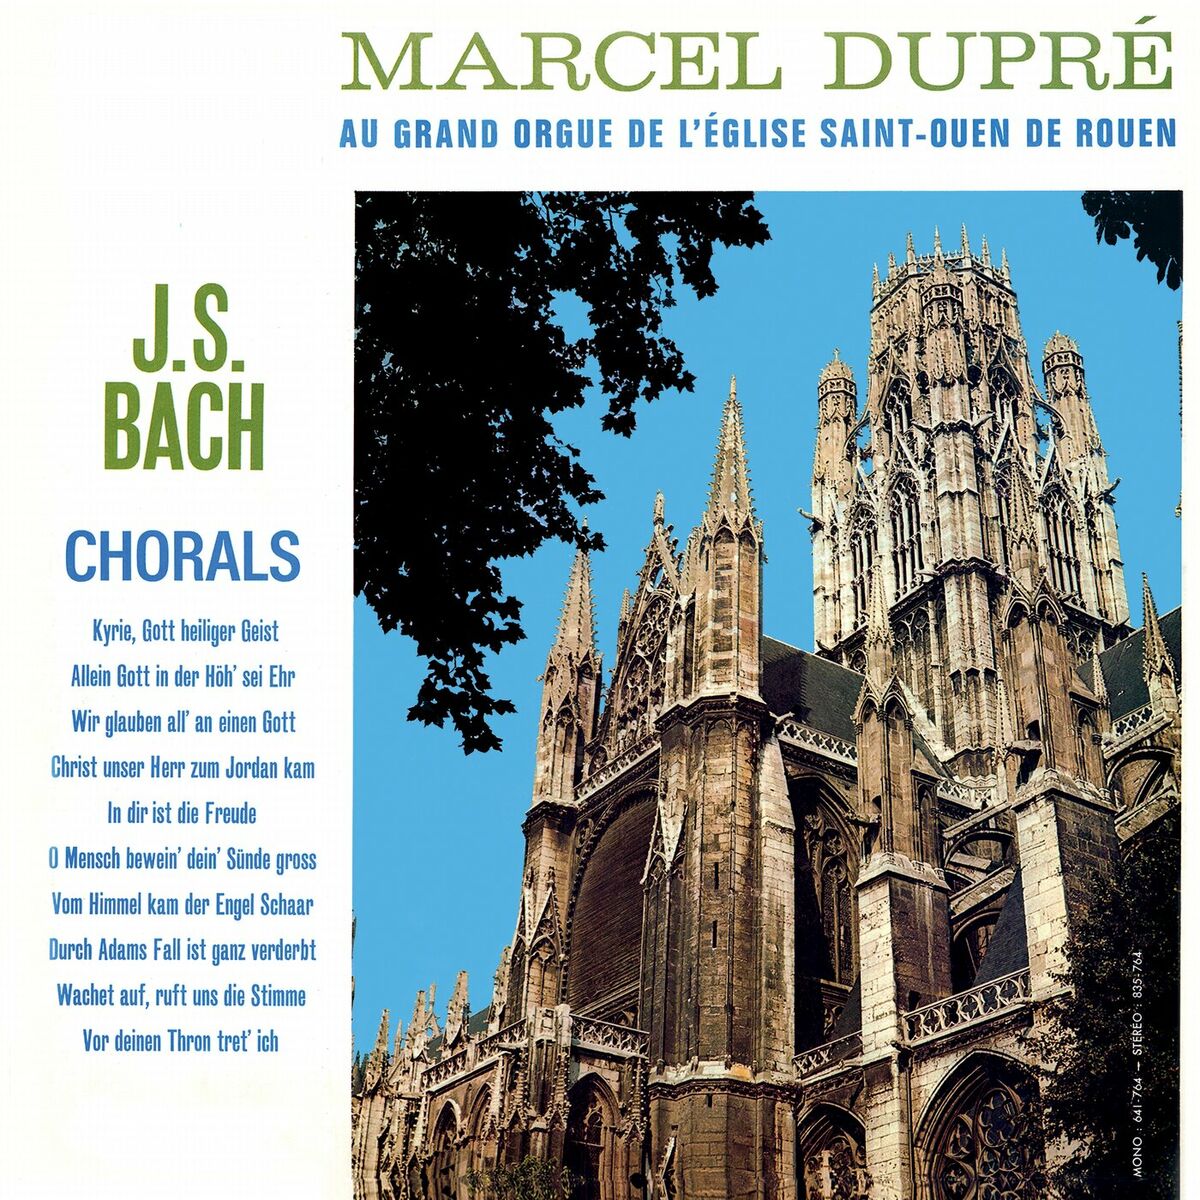 Marcel Dupré: albums, songs, playlists | Listen on Deezer